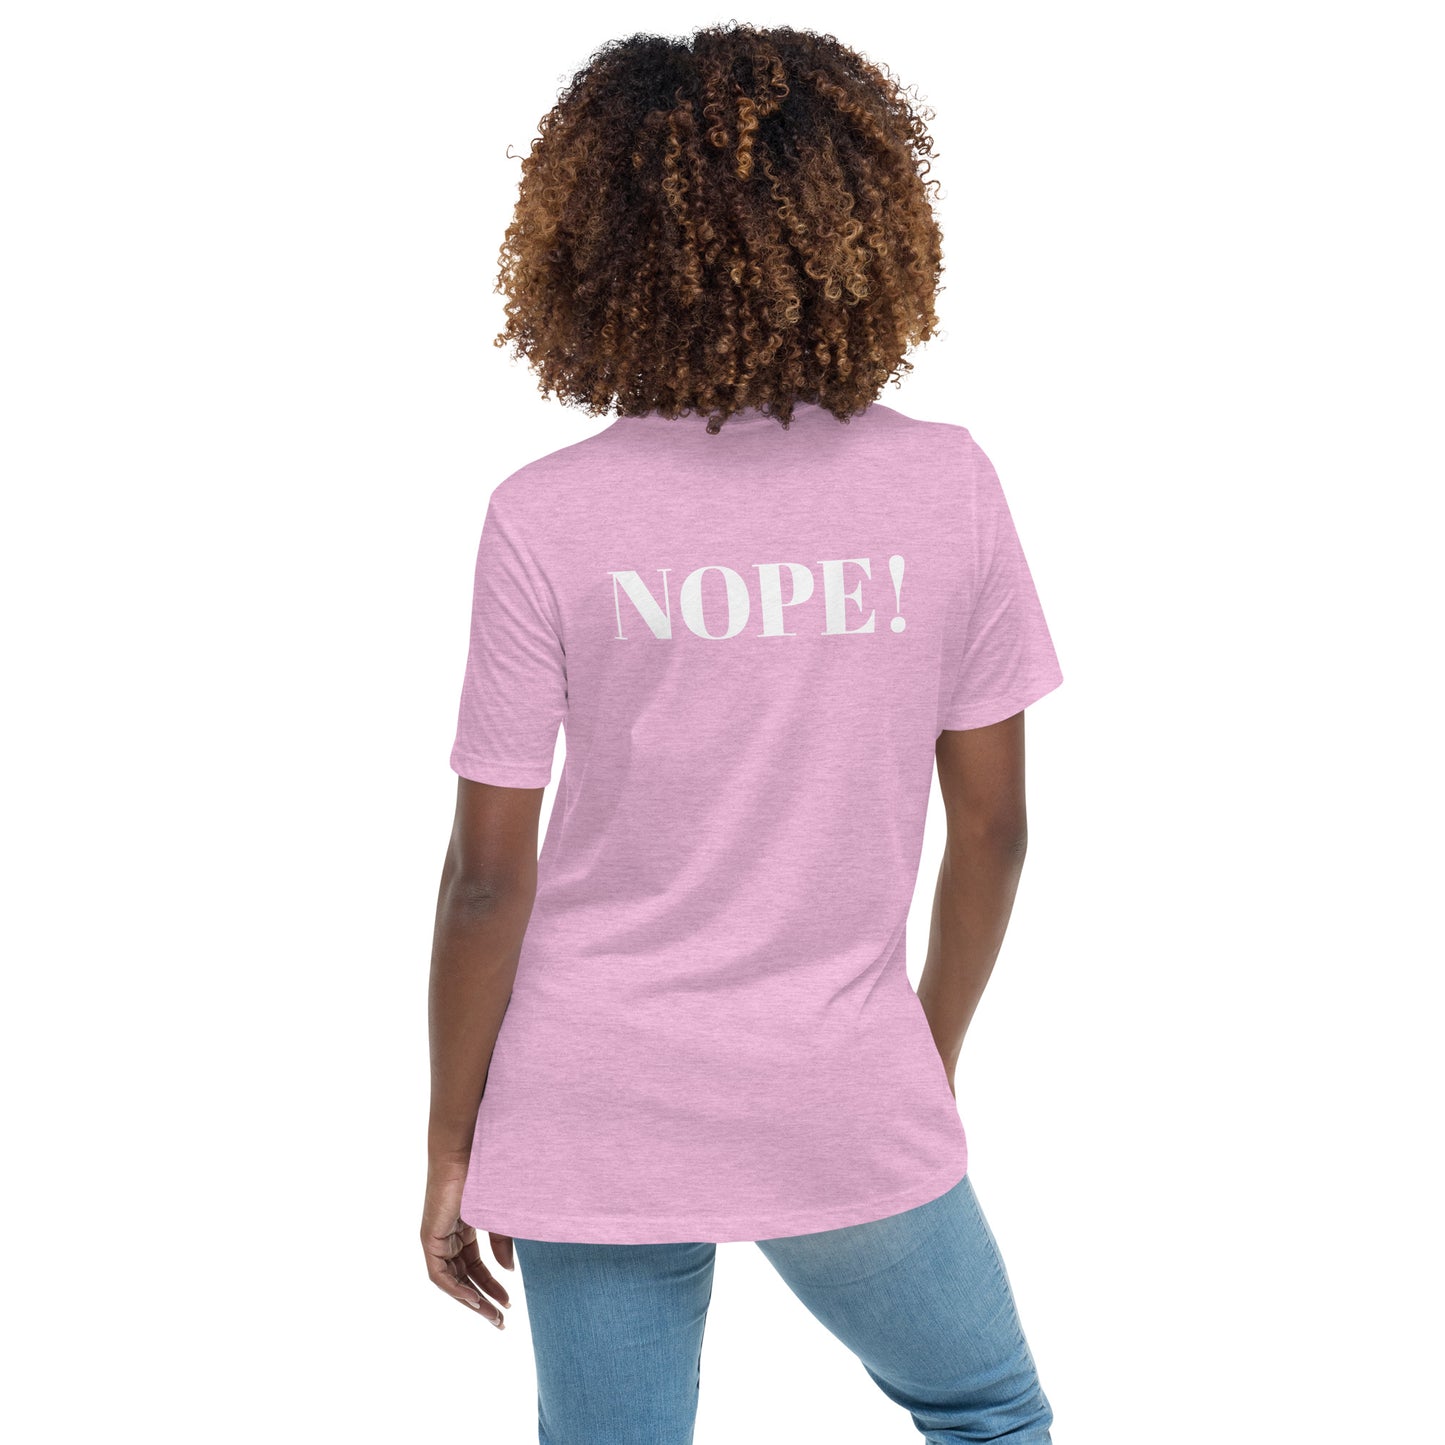 Nope! Women's Relaxed T-Shirt